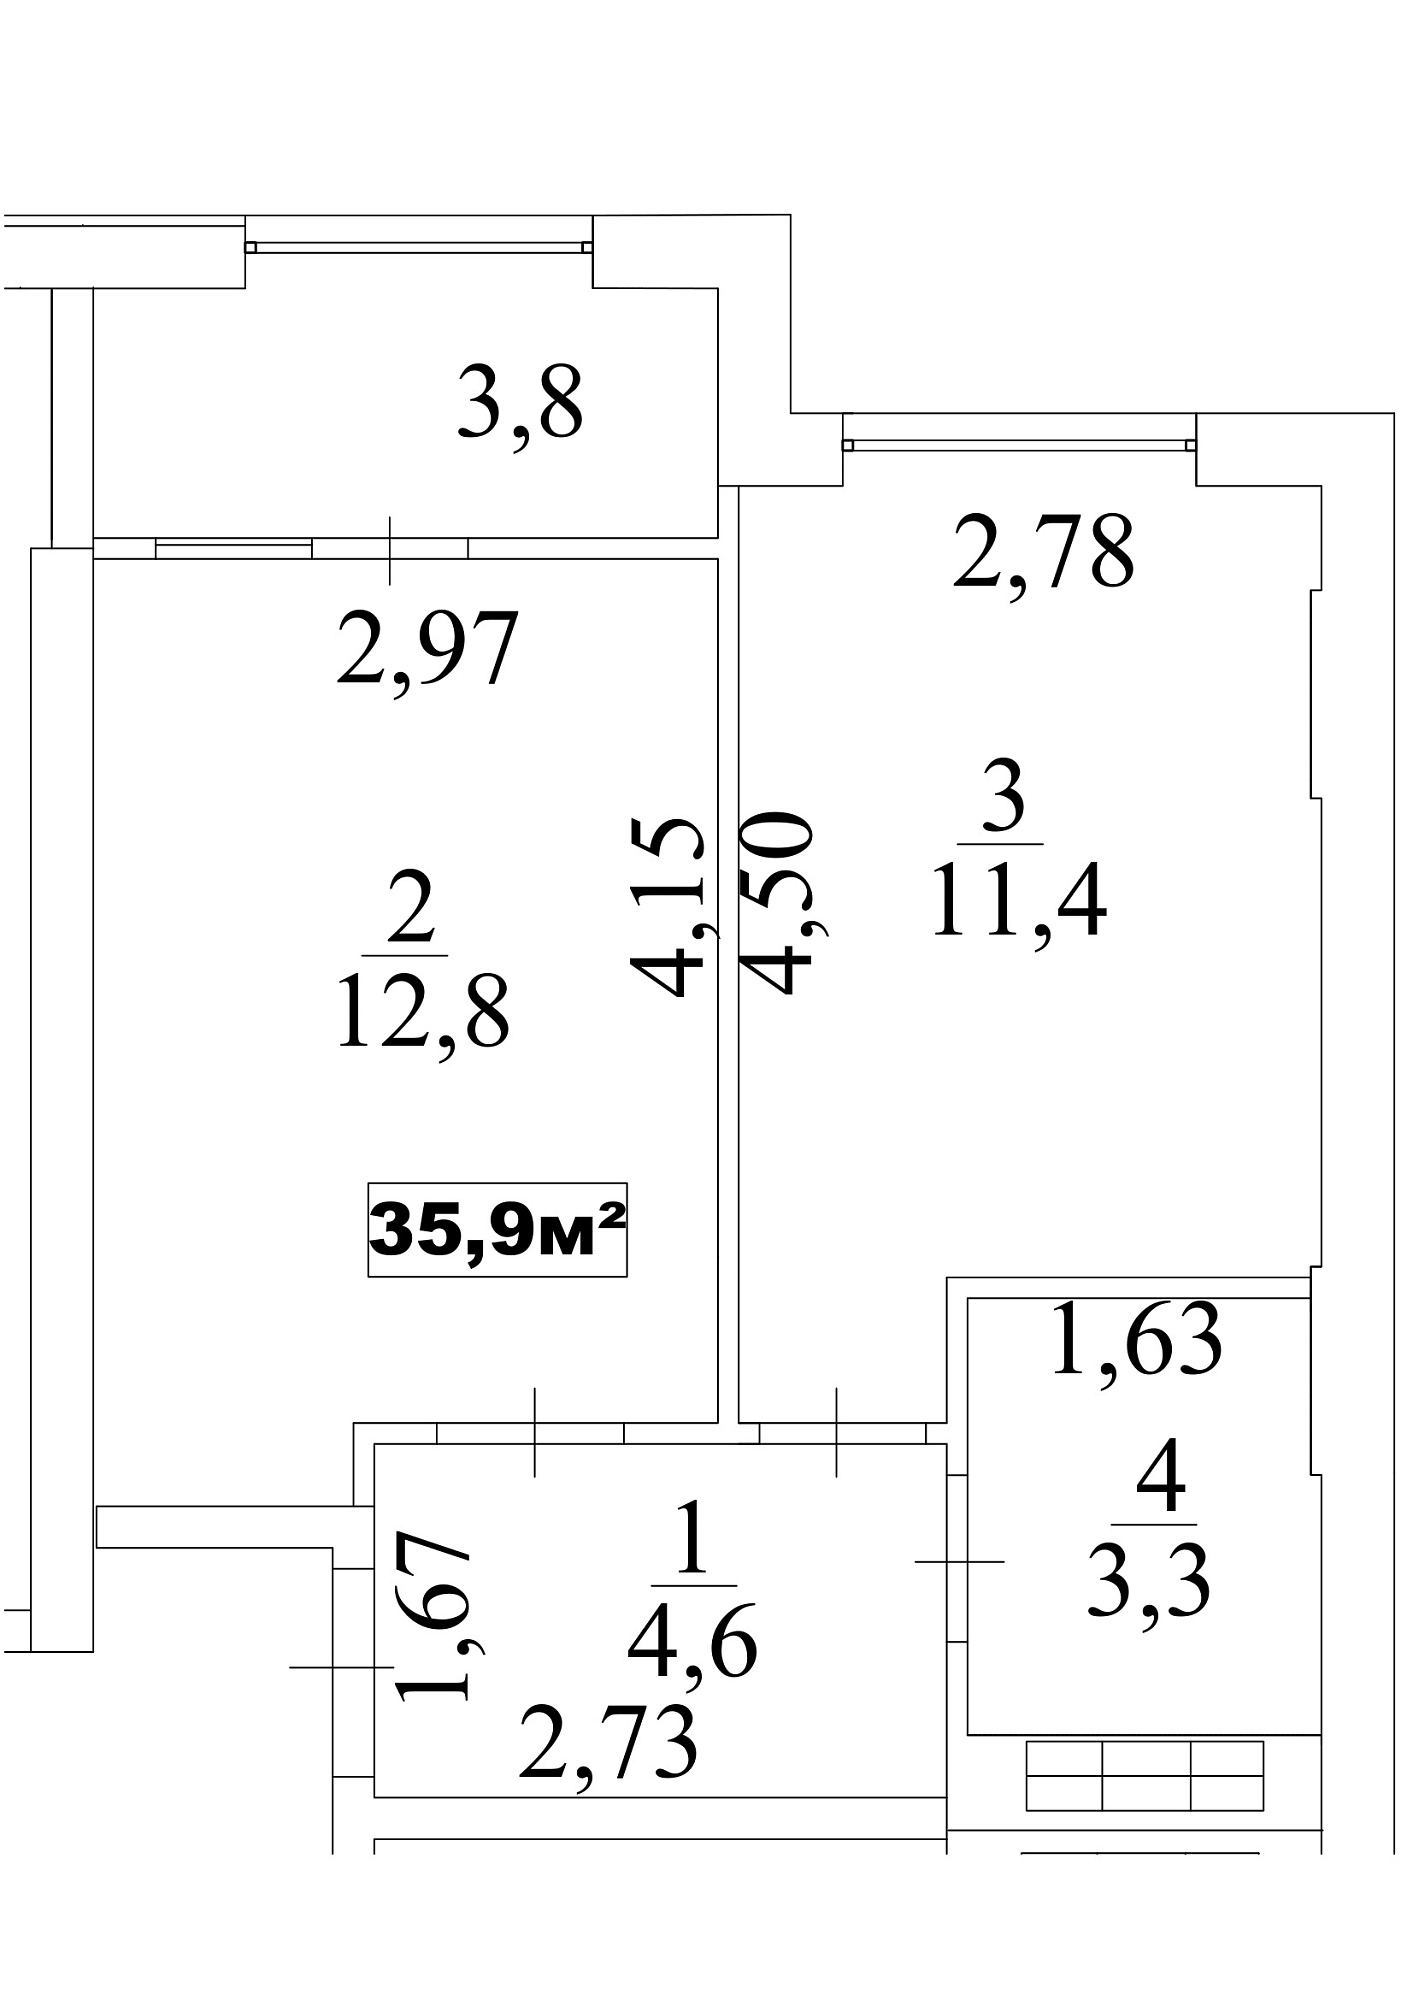 Планировка 1-к квартира площей 35.9м2, AB-10-02/0016б.